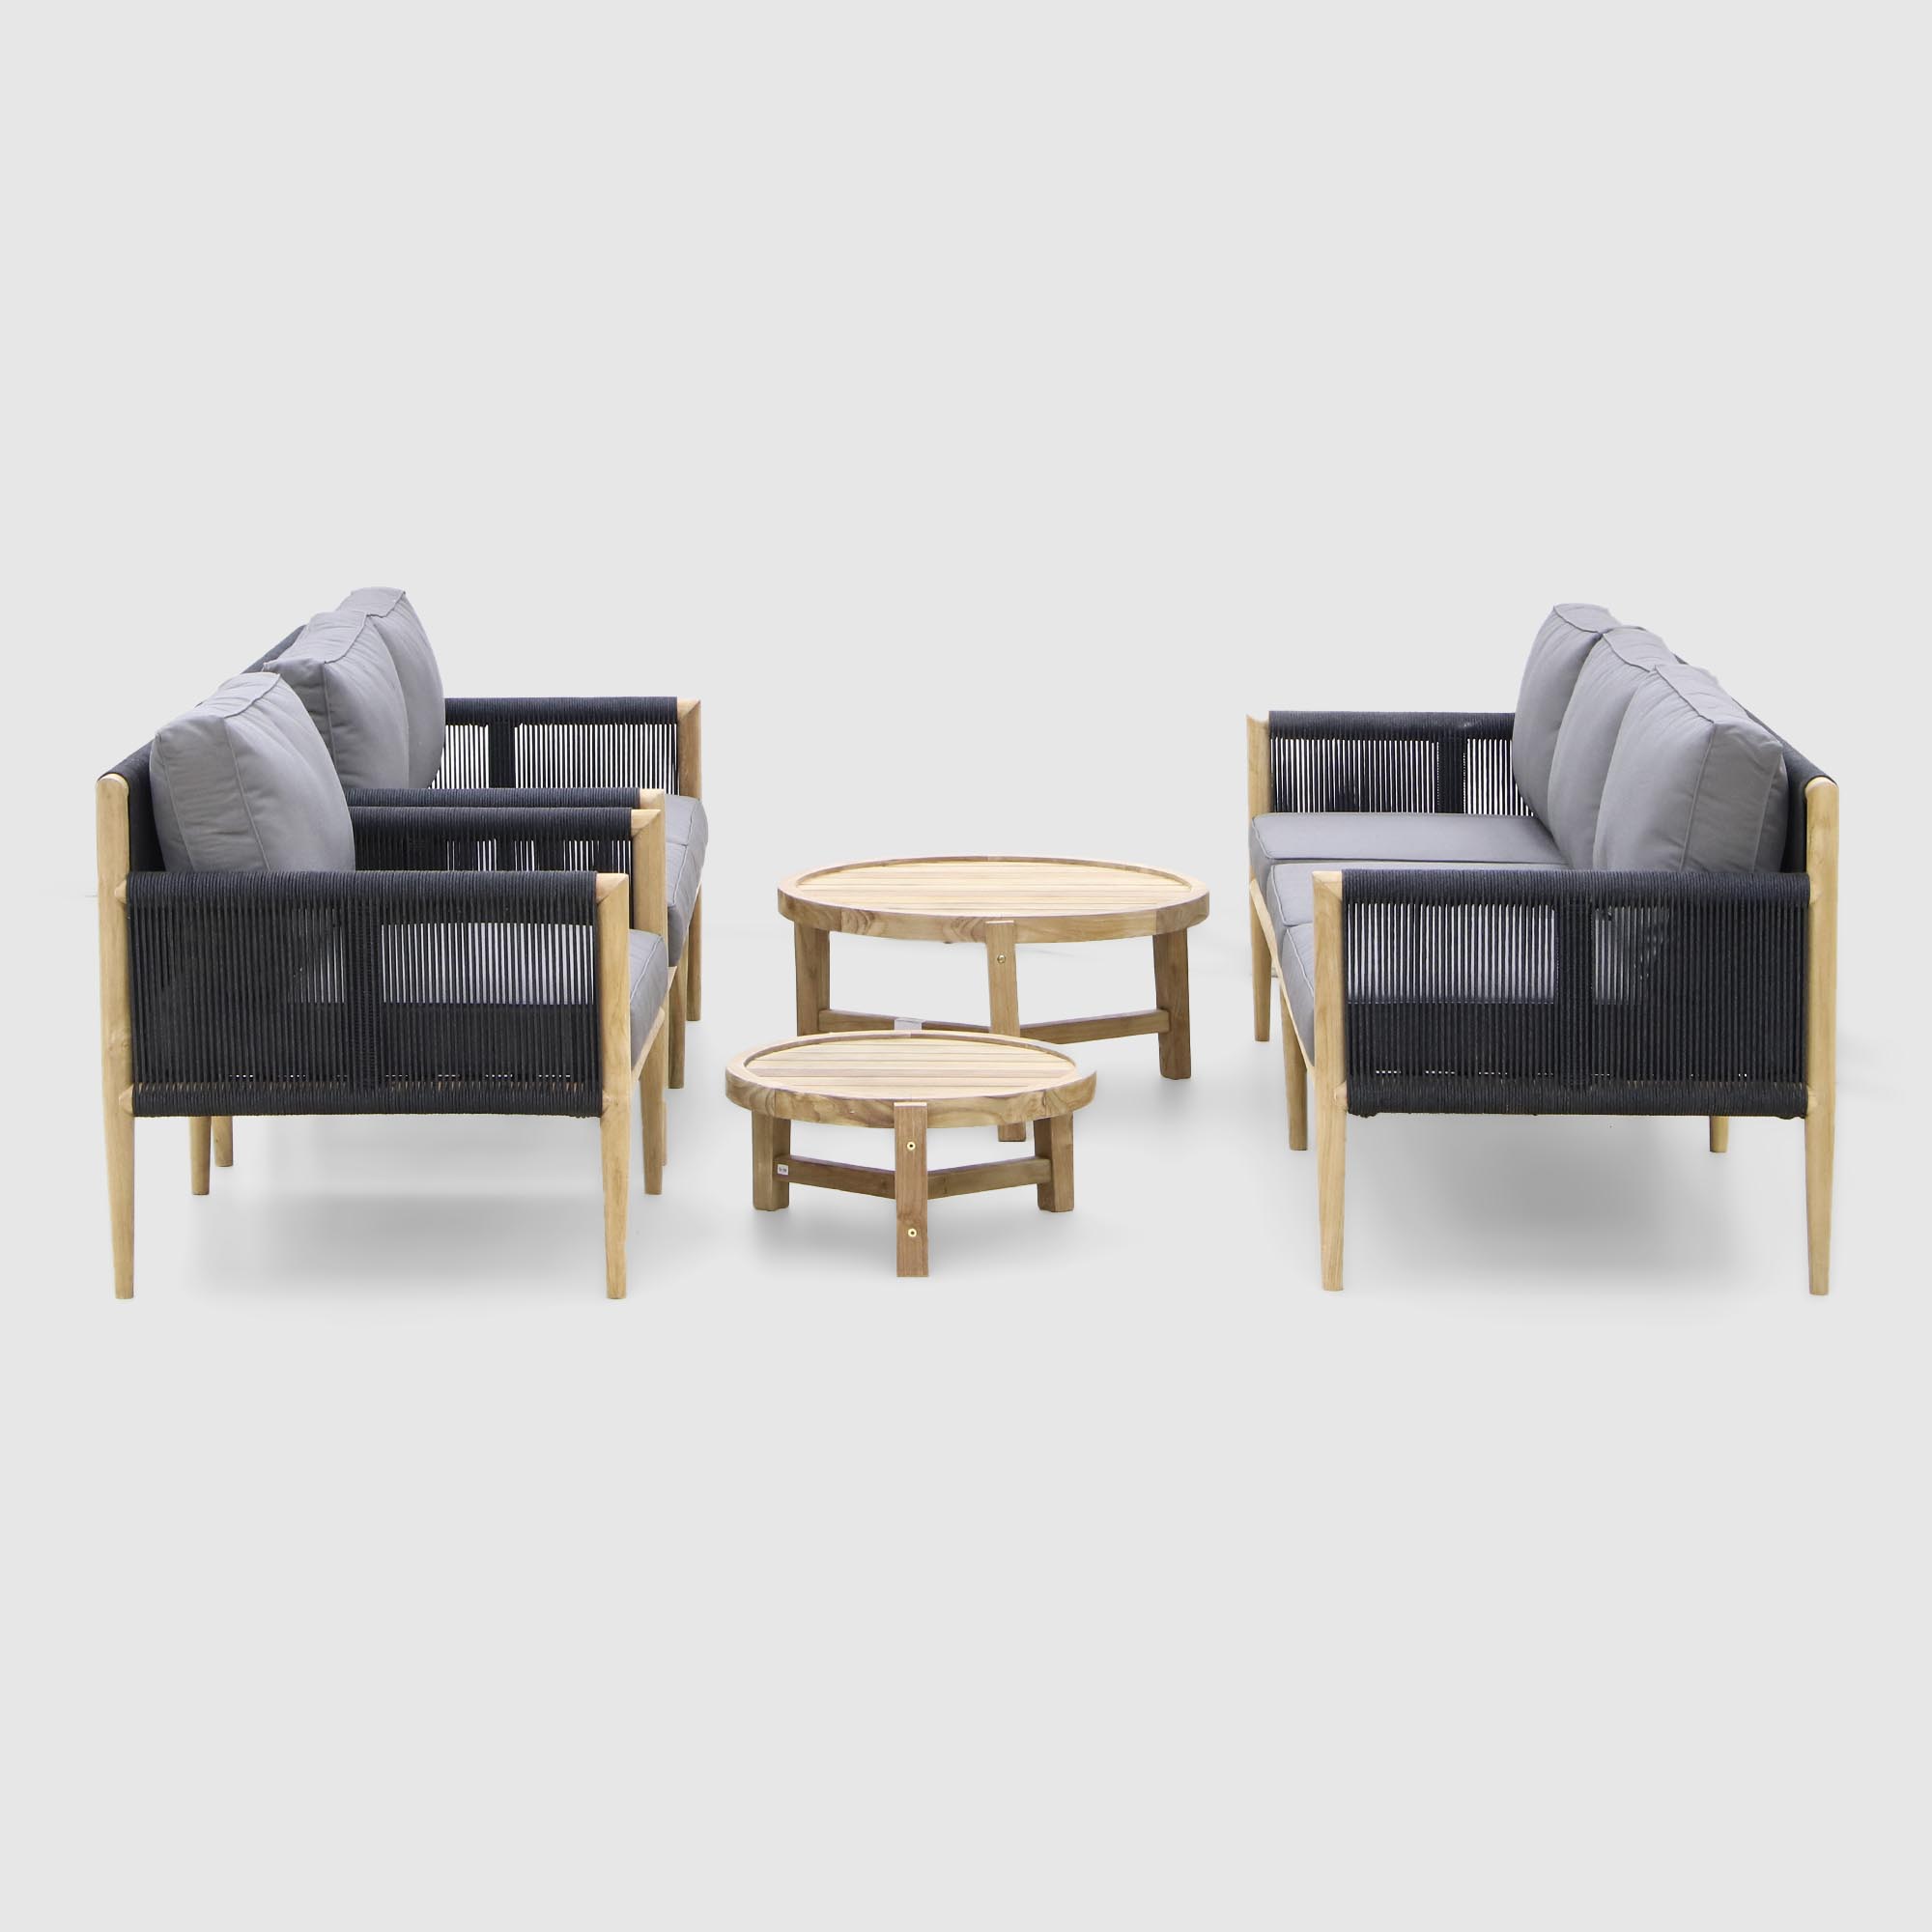 Комплект мебели Jepara Taurus из 5 предметов: 2 дивана+кресло+столики комплект садовой мебели jepara barca из 5 предметов